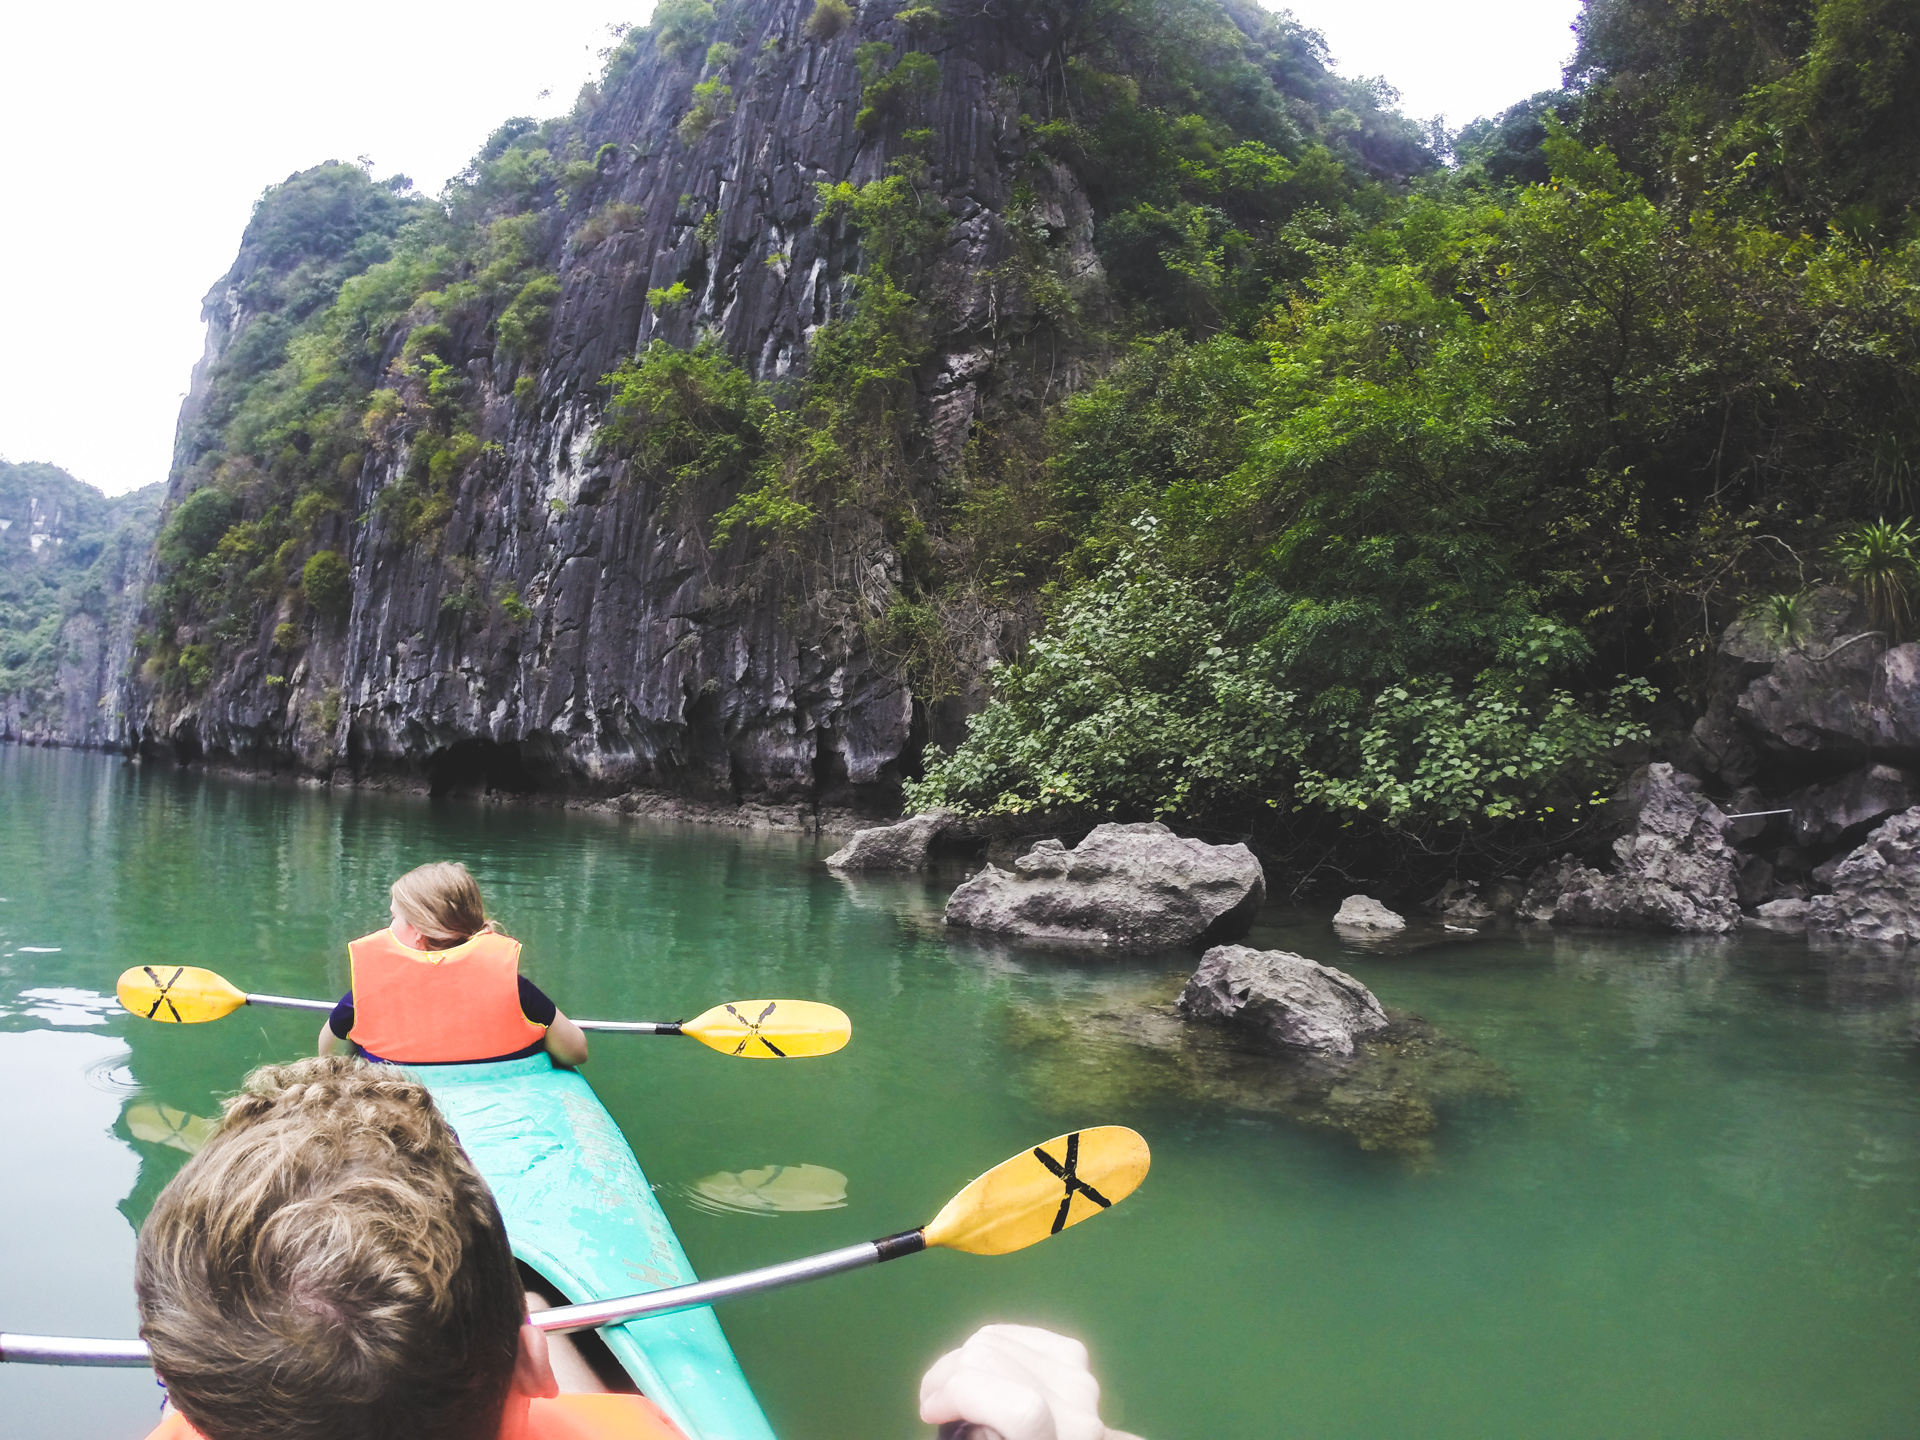 Kayaking in HaLong Bay